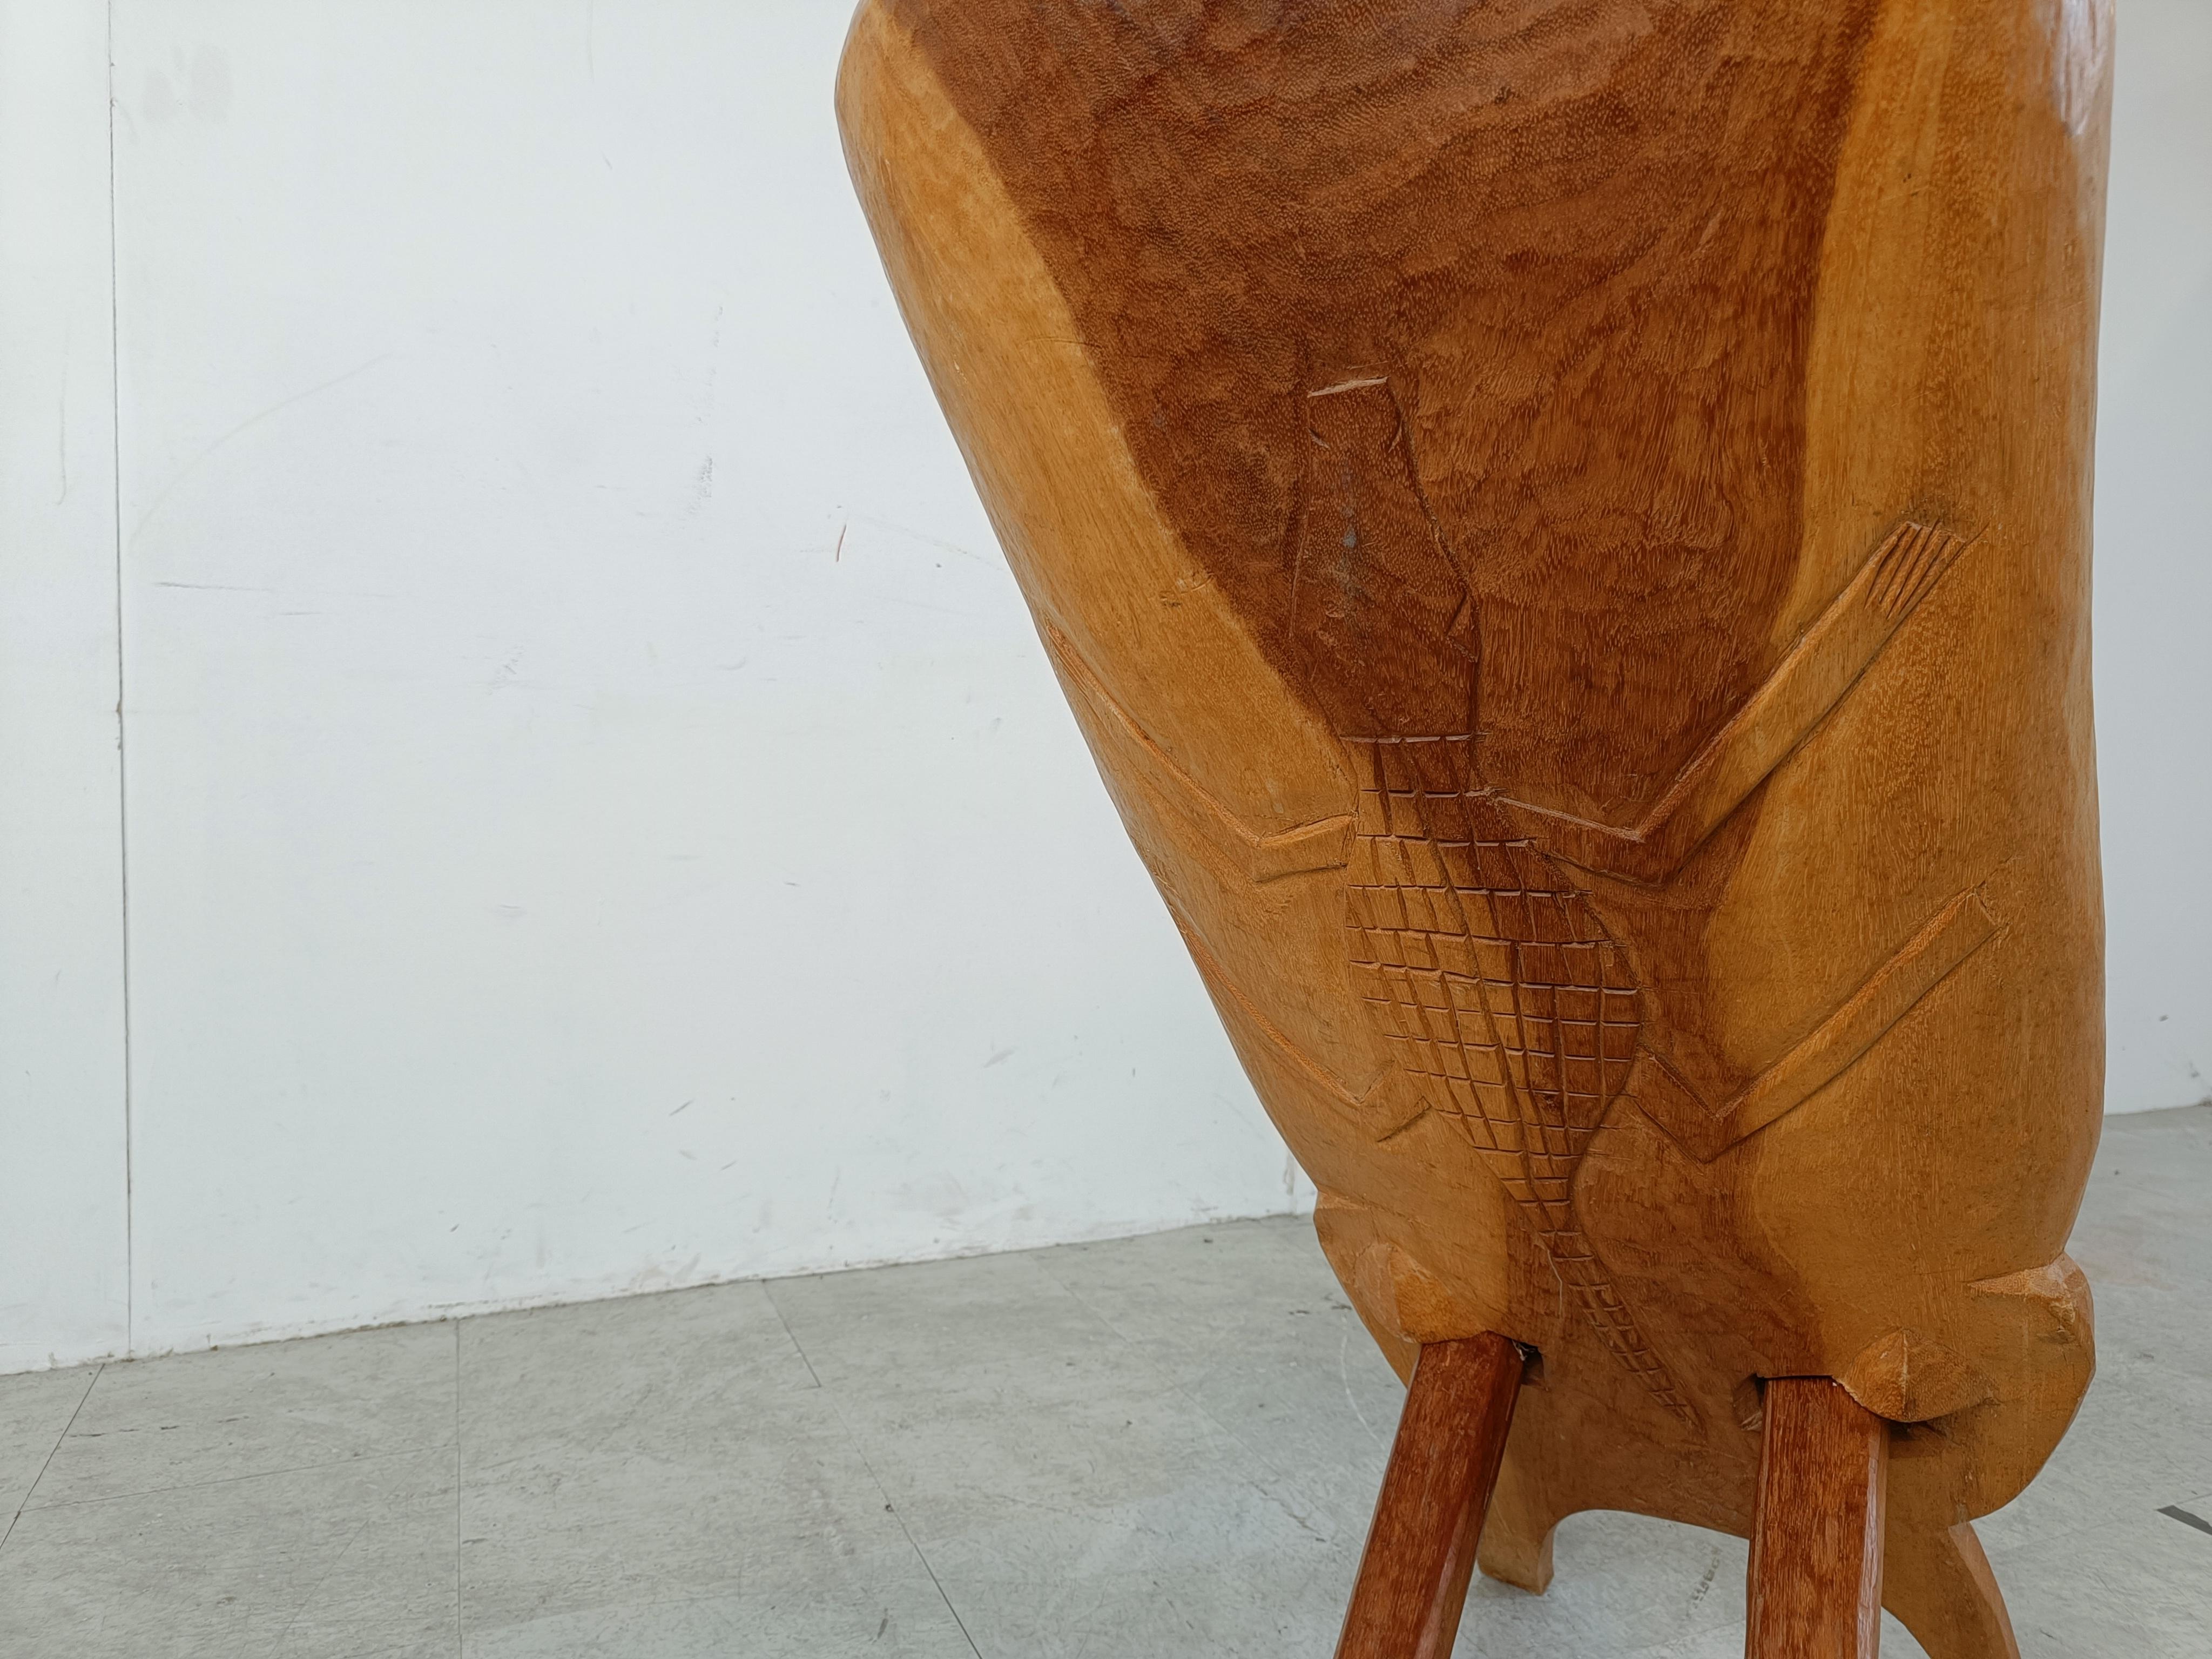 Chaises d'accouchement traditionnelles africaines constituées de deux planches de bois emboîtées soigneusement sculptées.

Magnifiques vains en bois naturel.

Bon état.

Années 1960 - Afrique

Dimensions :
Hauteur : 90cm/35.43